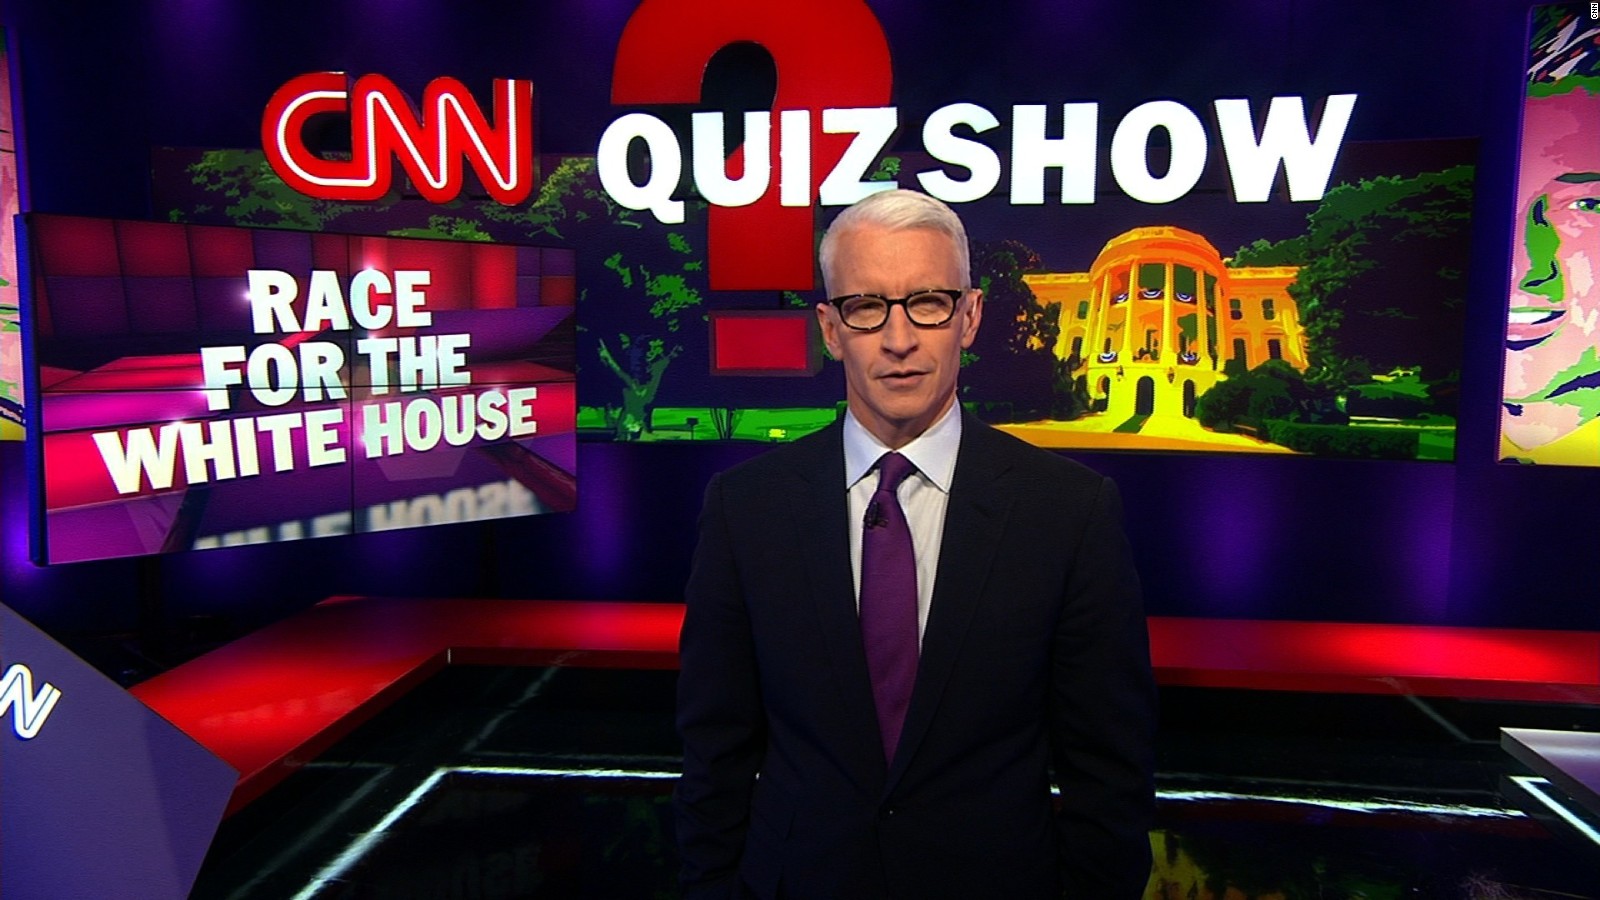 The CNN Quiz Show CNN